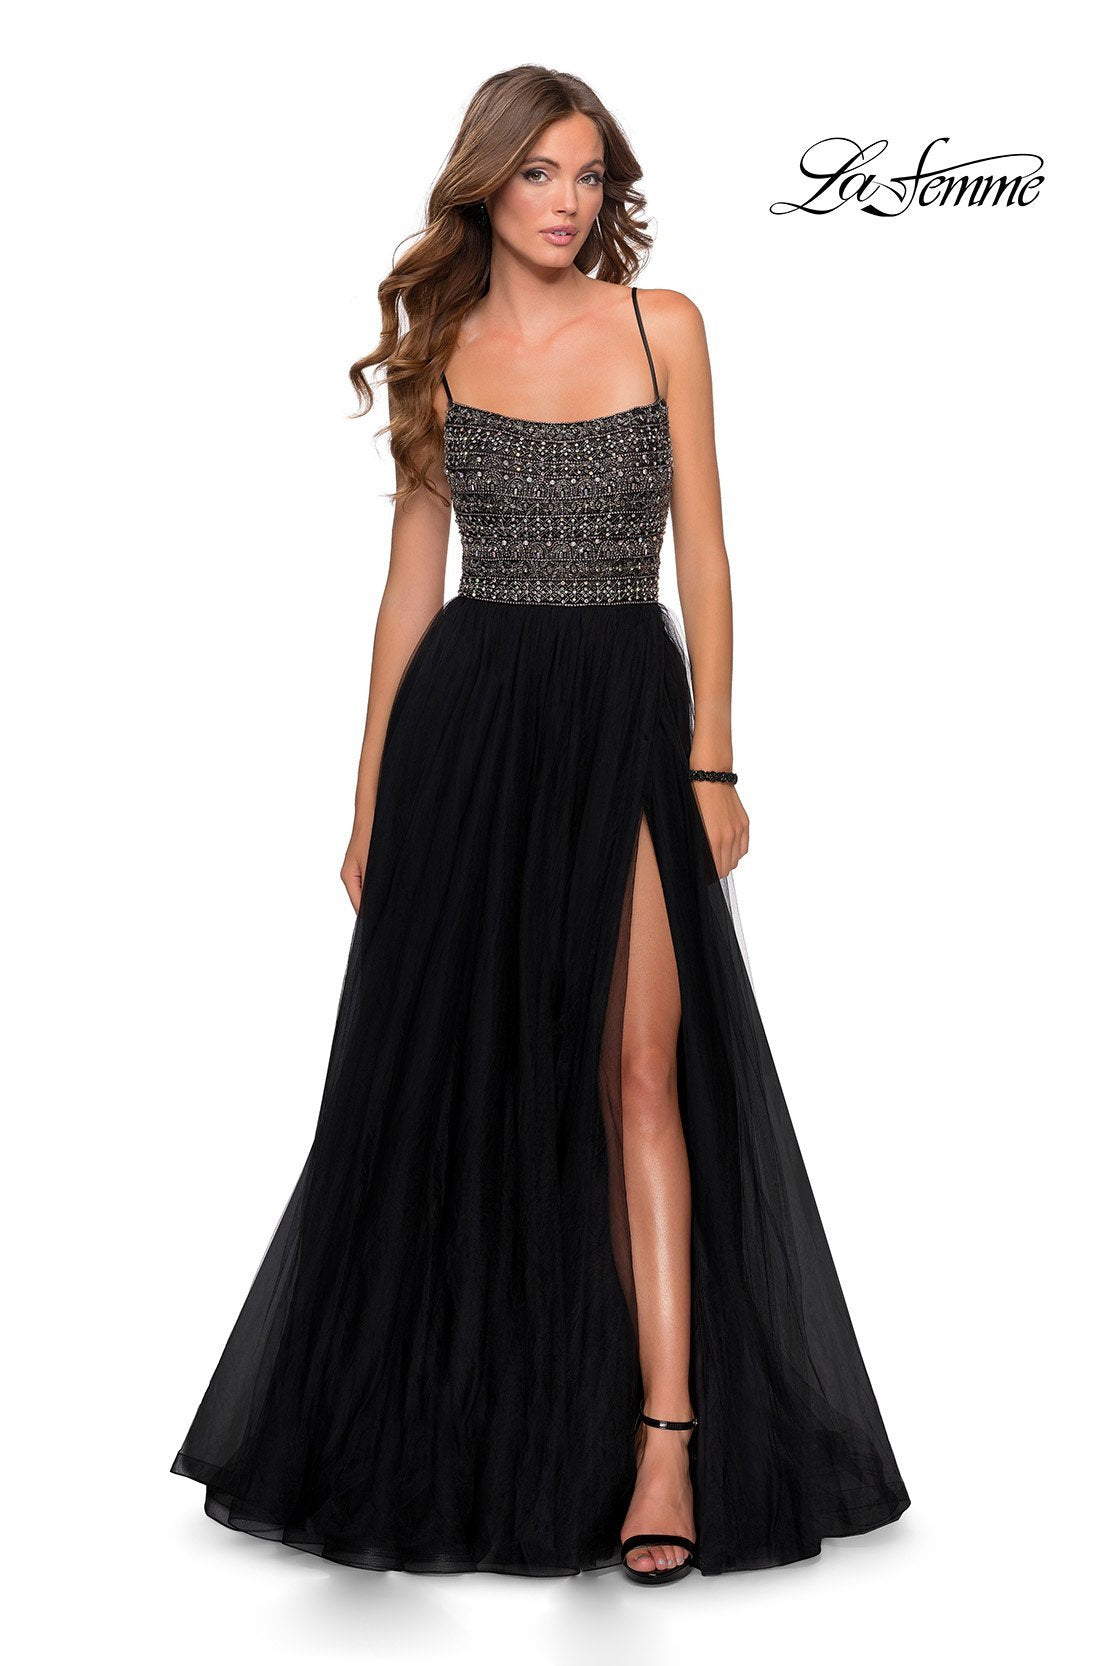 La Femme 28535 dress images in these colors: Black, Mauve, Silver.